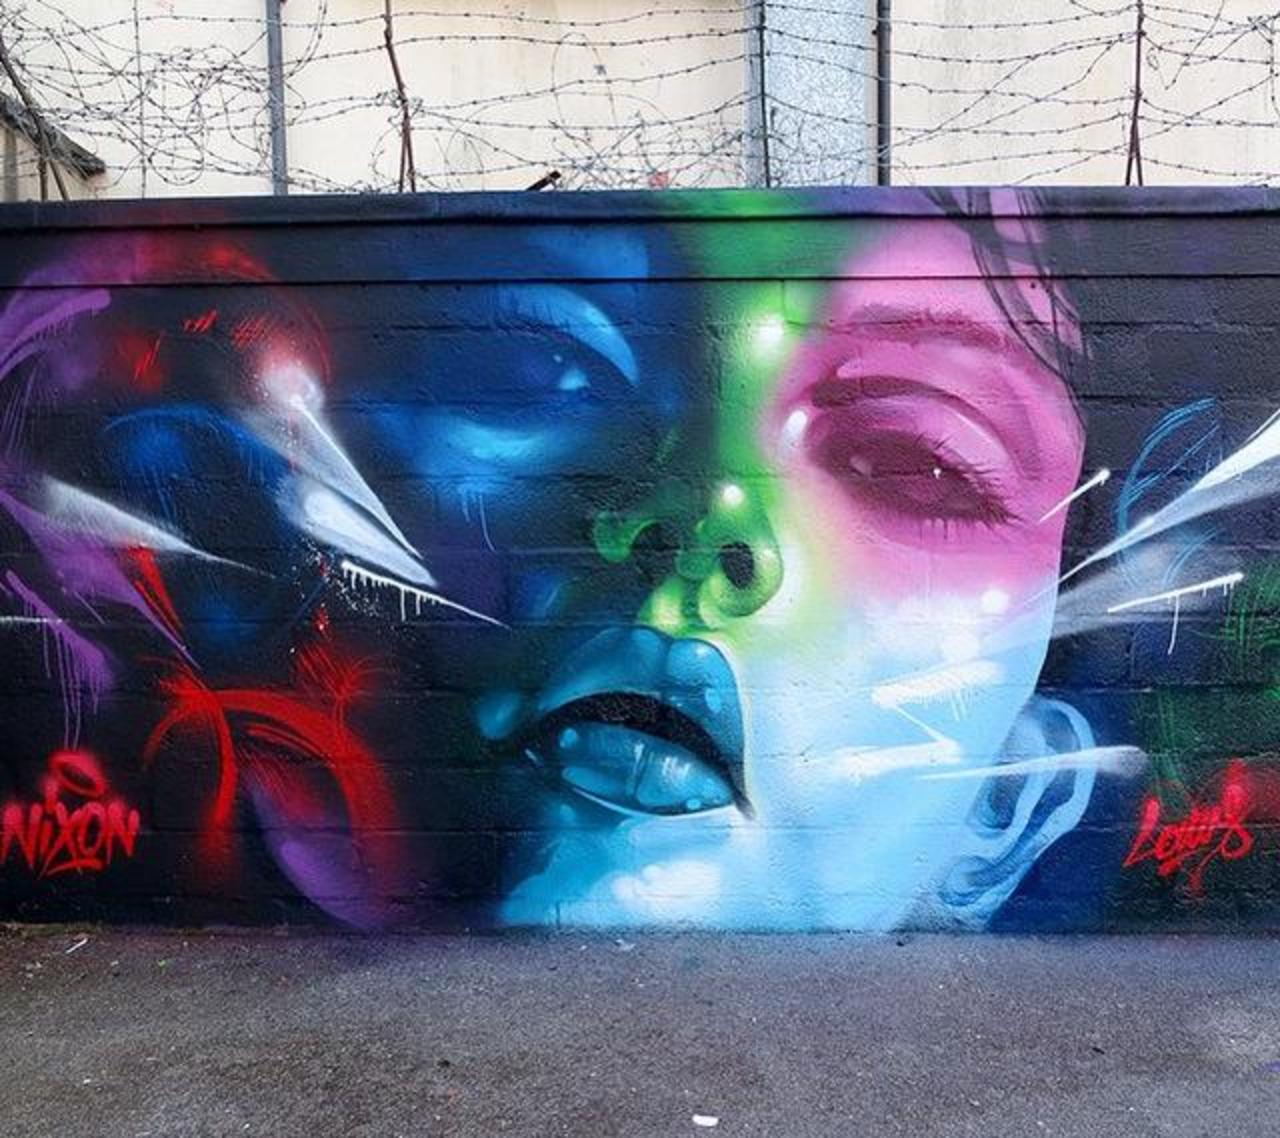 New Street Art by rmerism in Cardiff 

#art #arte #graffiti #streetart http://t.co/ZzroSBpsMz